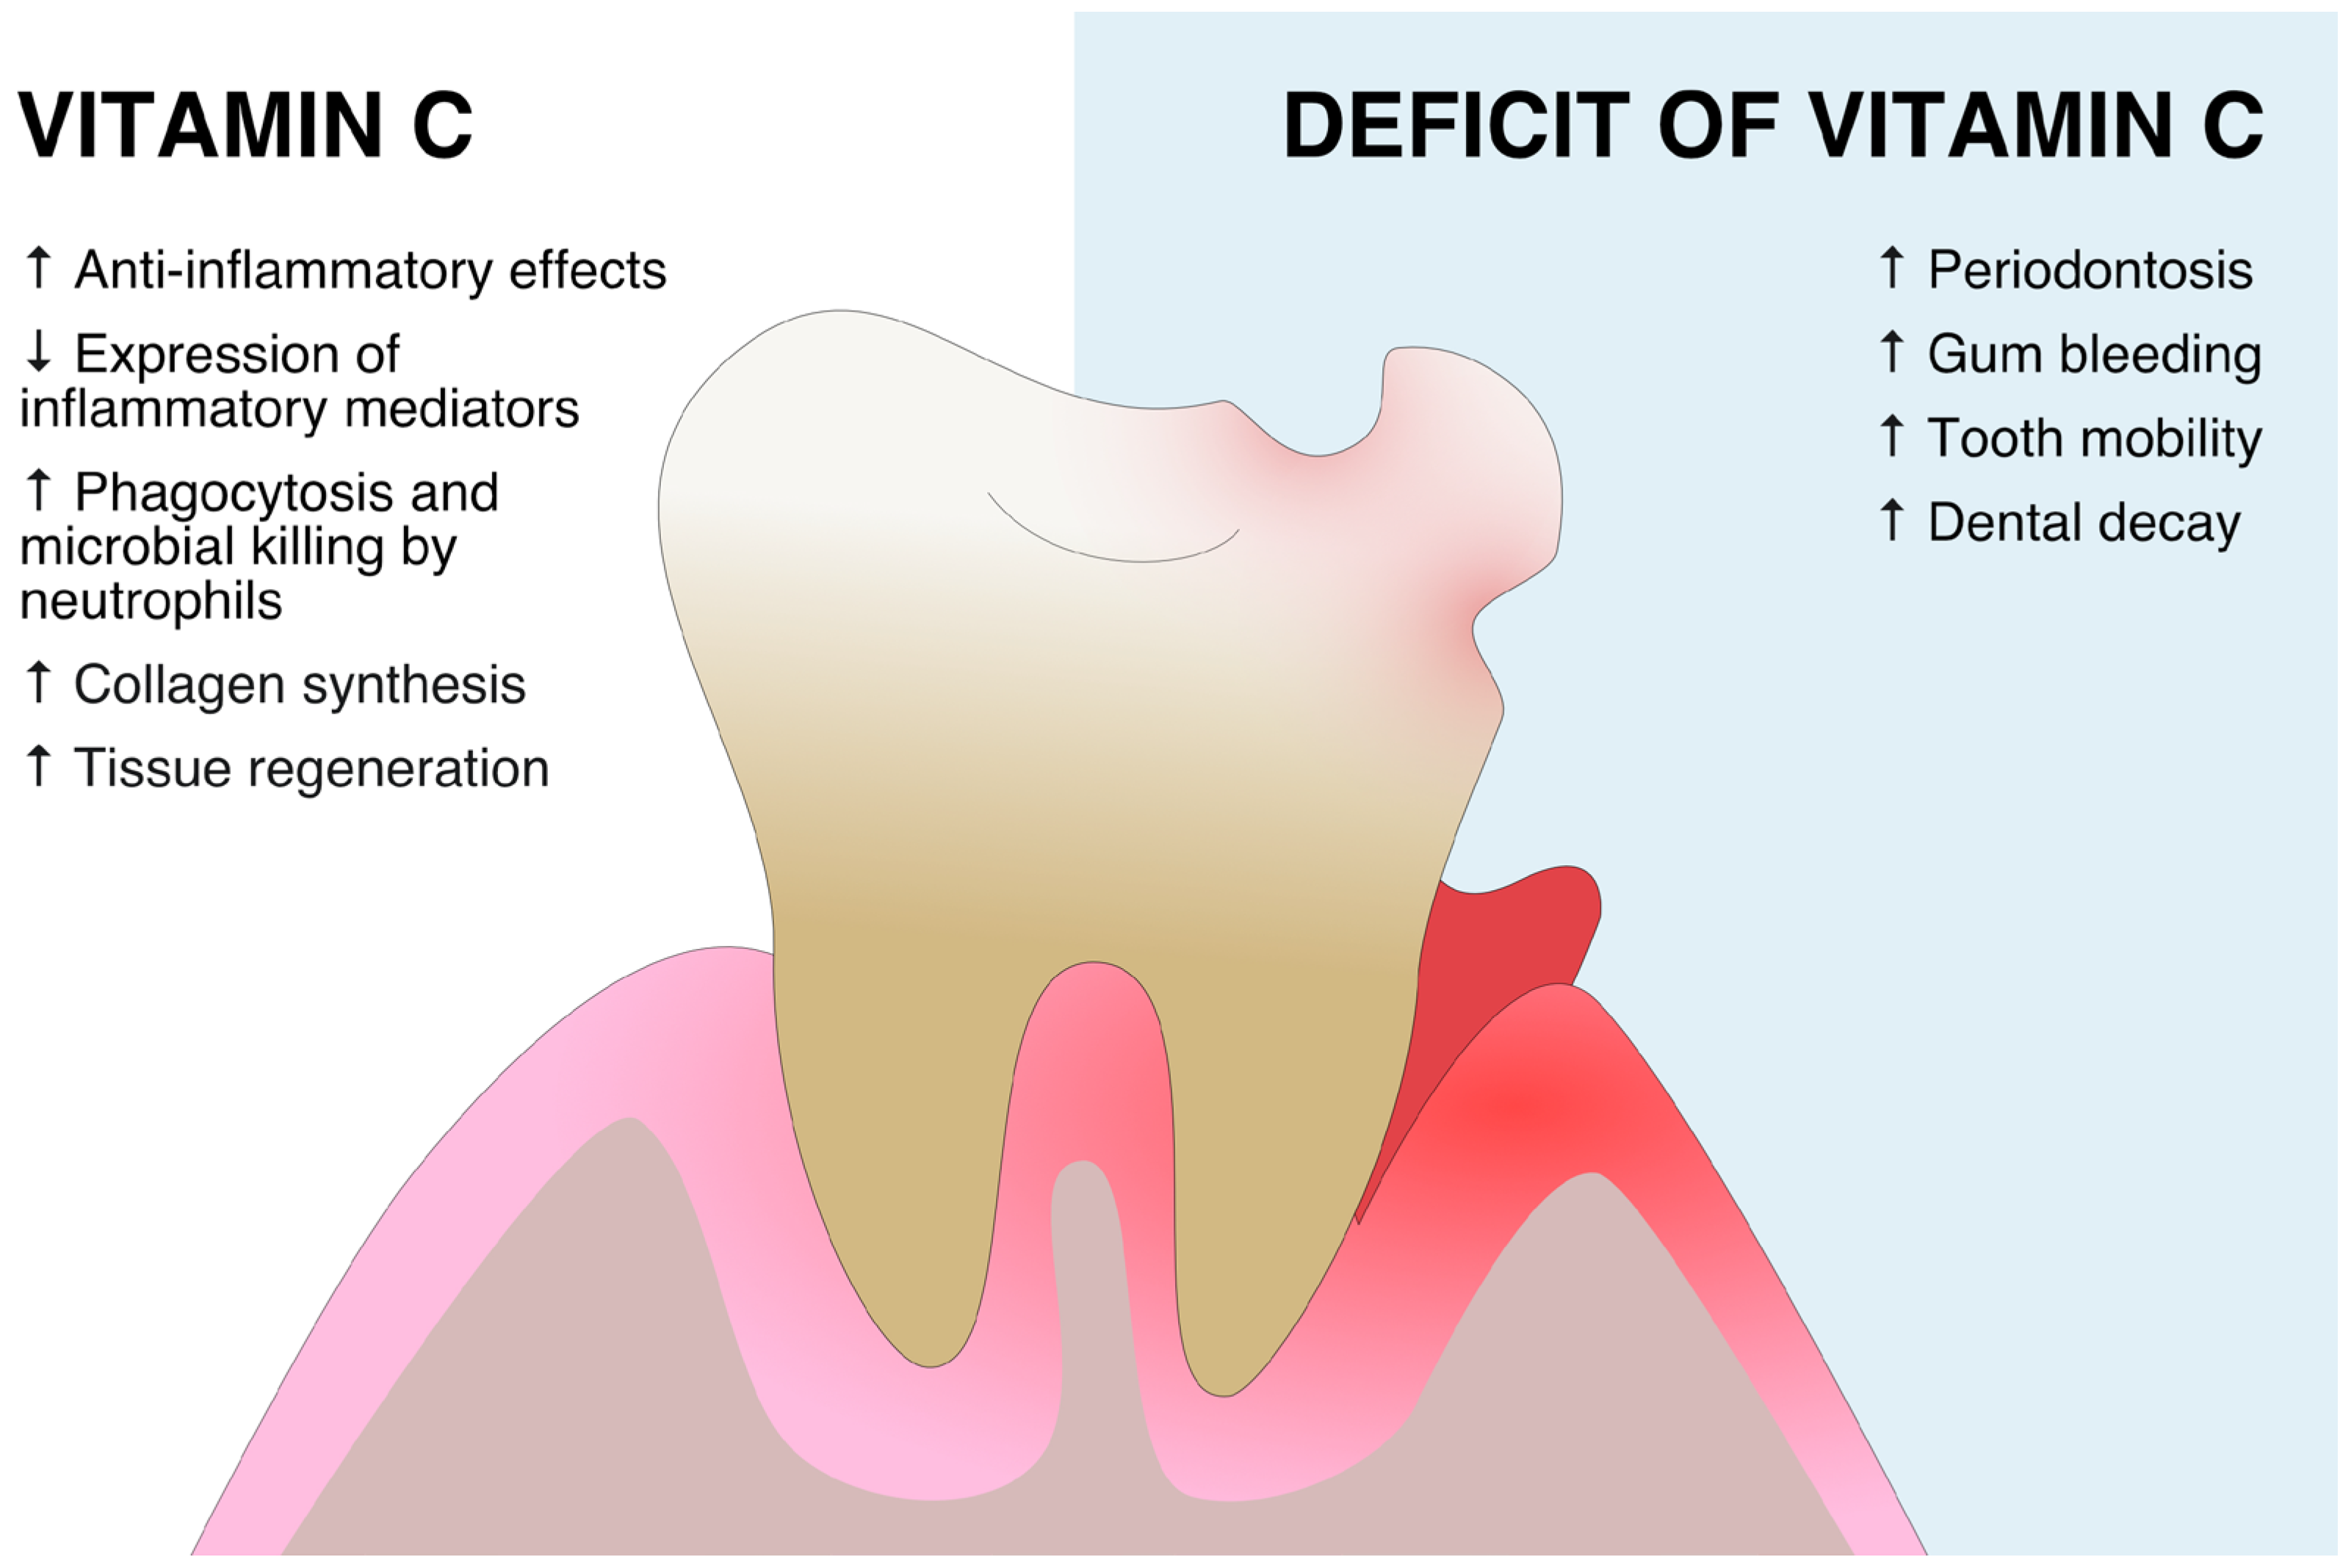 Vitamin C Deficiency Diseases